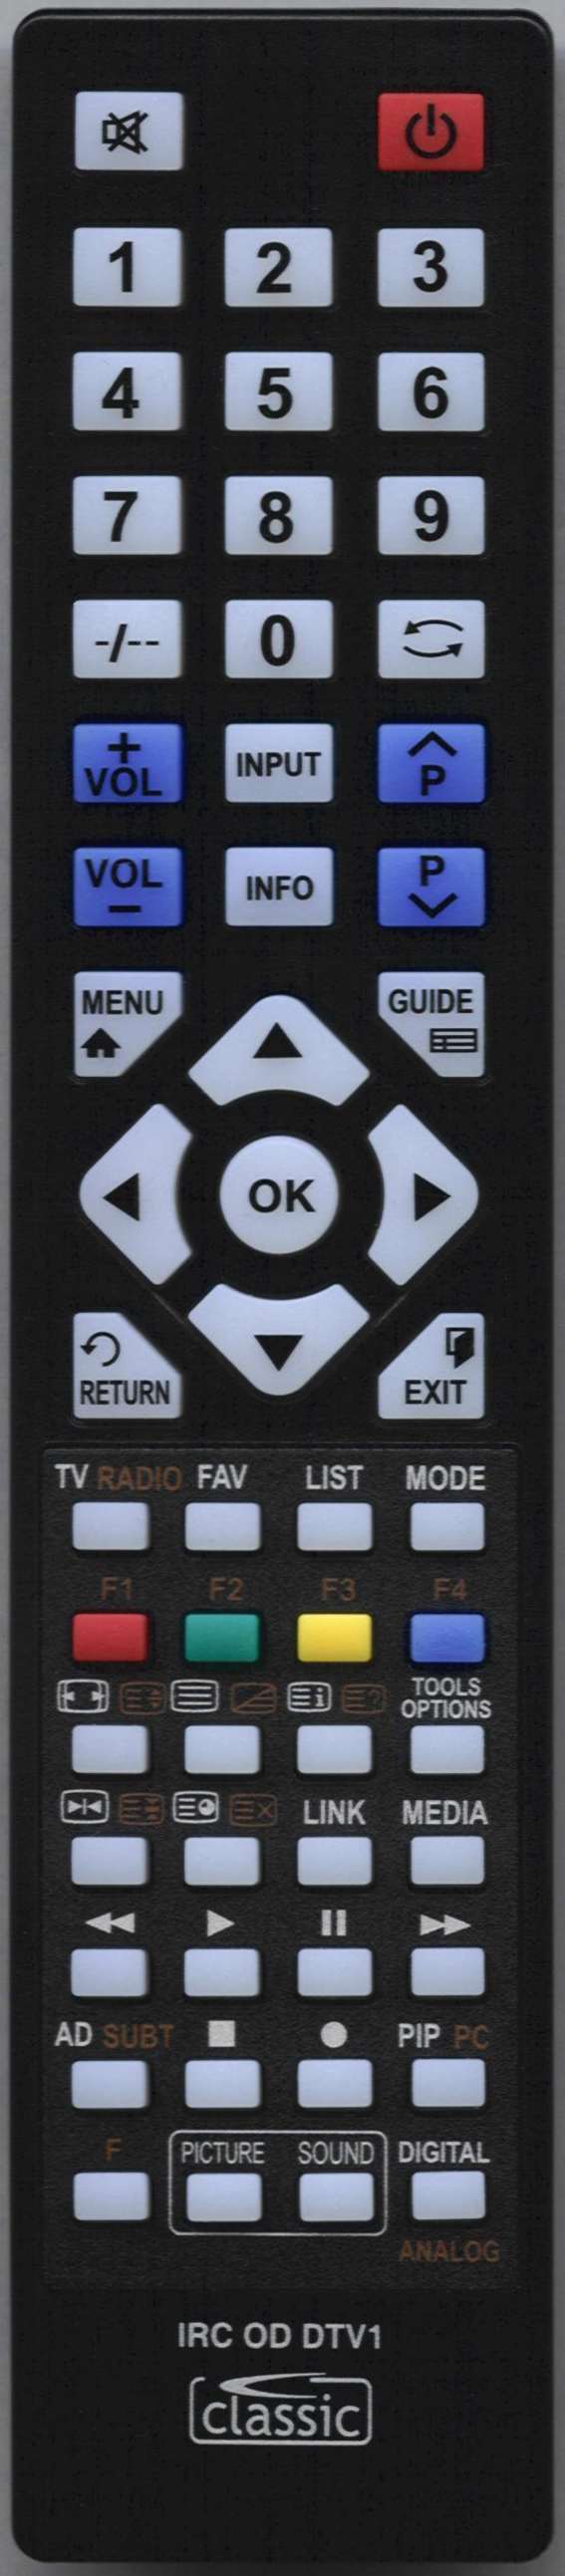 Samsung 00104C Remote Control